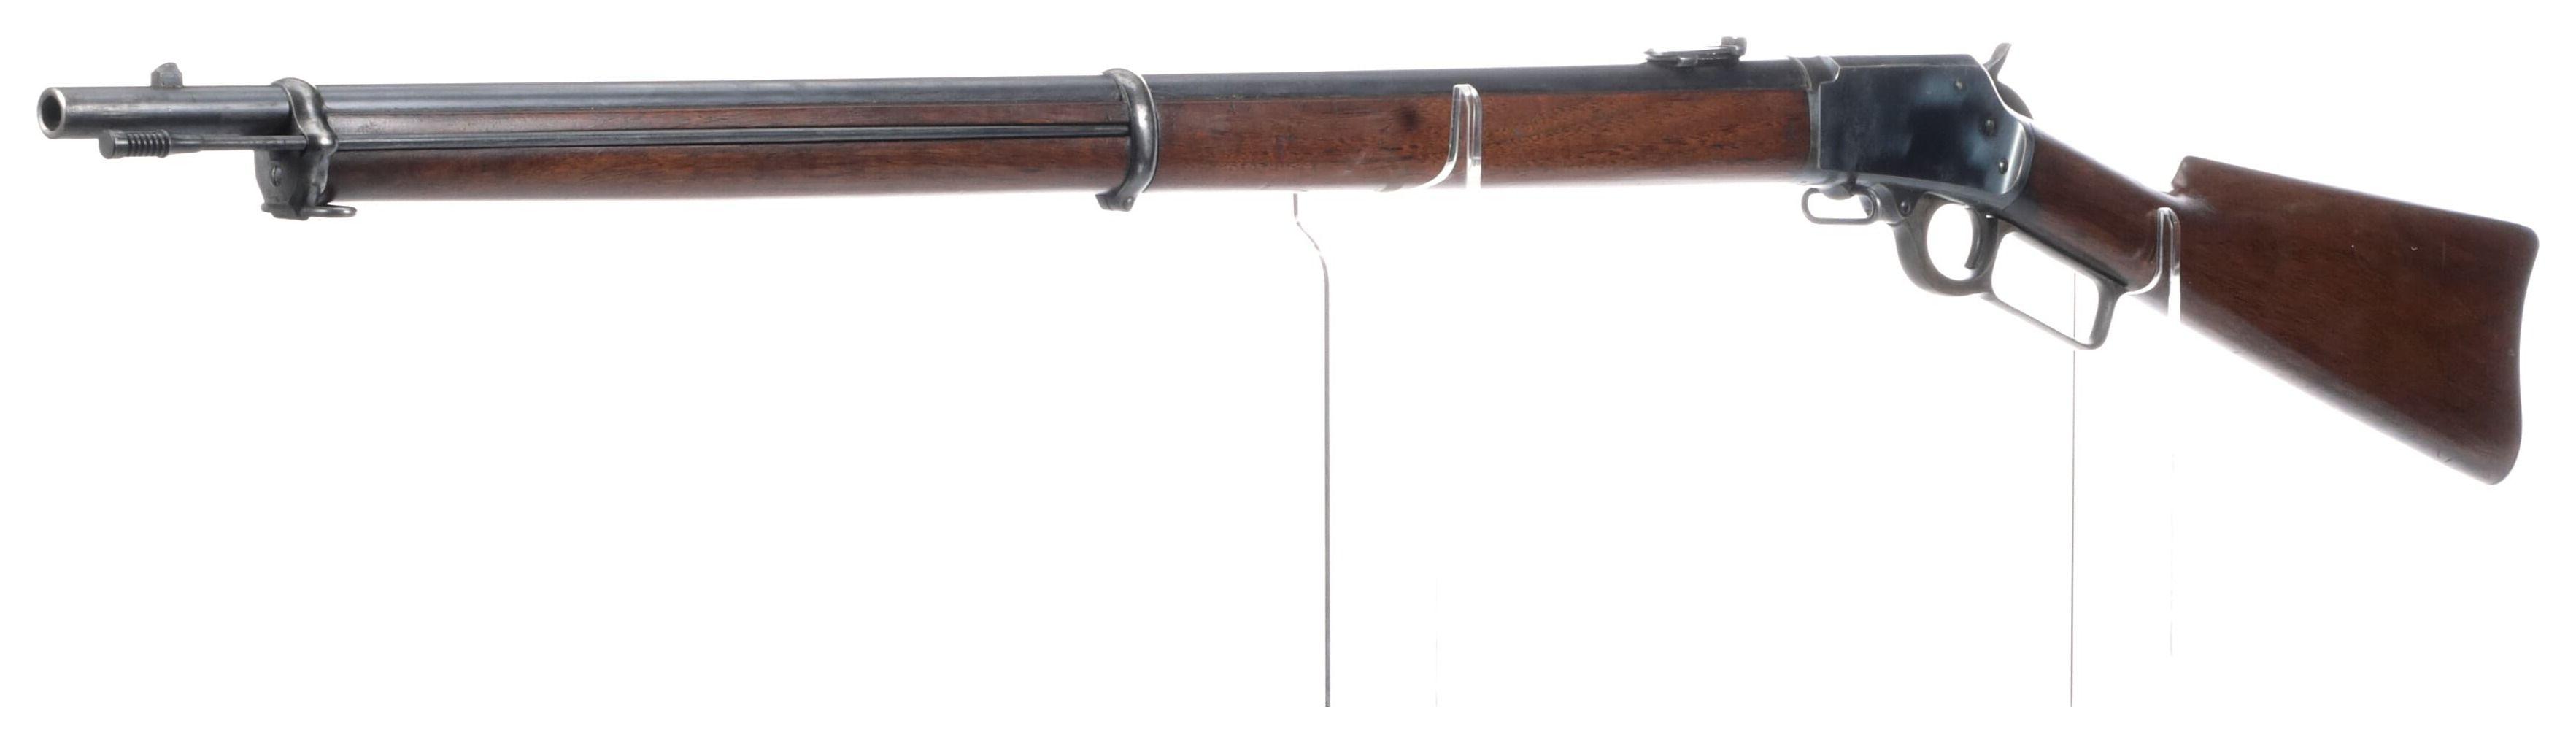 Bureau County Marked Marlin Model 1894 Musket